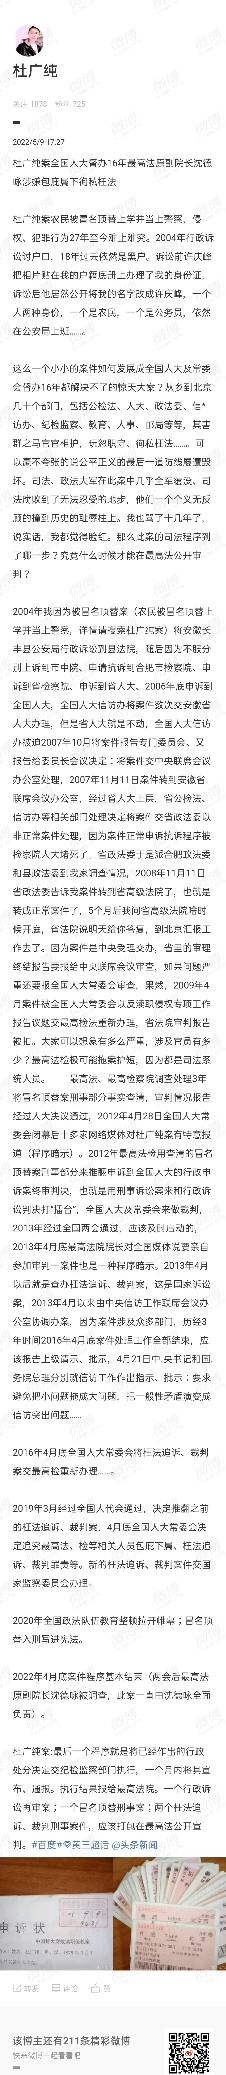 杜广纯案农民被冒名顶替27年18年诉讼难讨户口内幕揭秘一